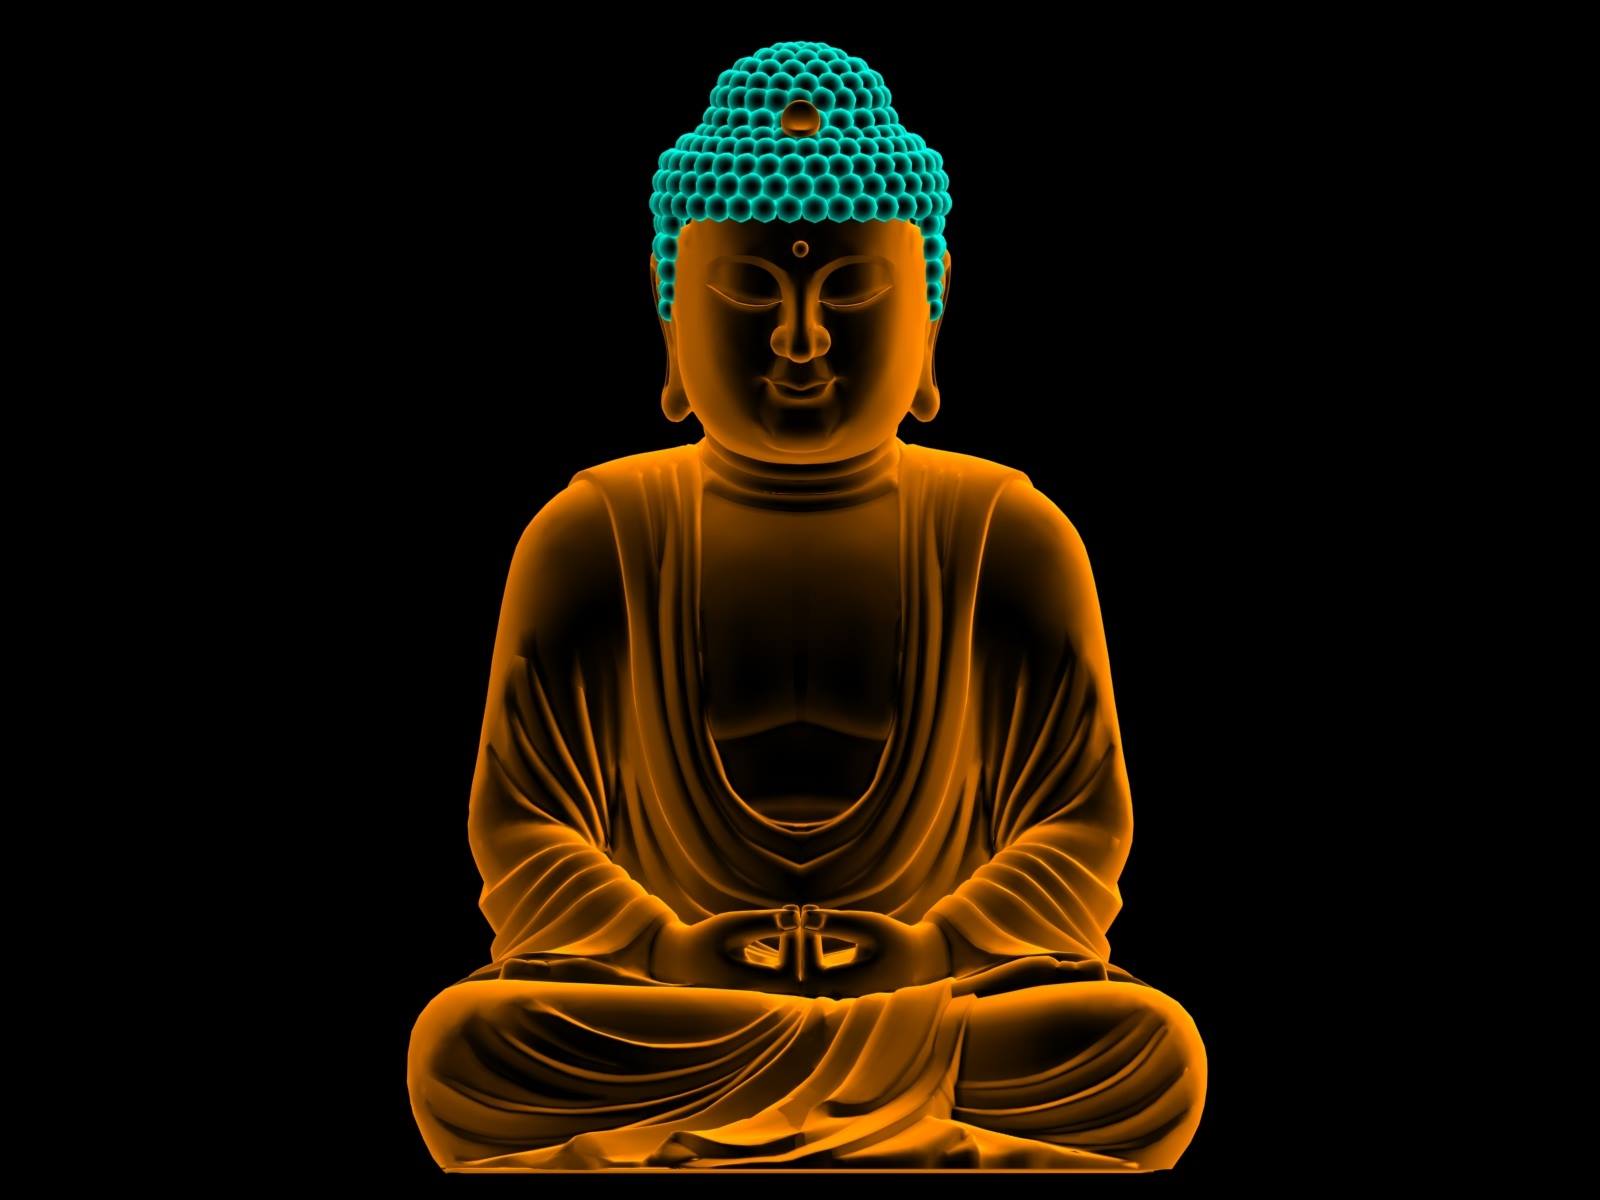 नमो बुद्धाय का अर्थ क्या होता है?Namo buddhay ka arth kya hota hai,matalab  kya hota hai #namobuddhay - YouTube